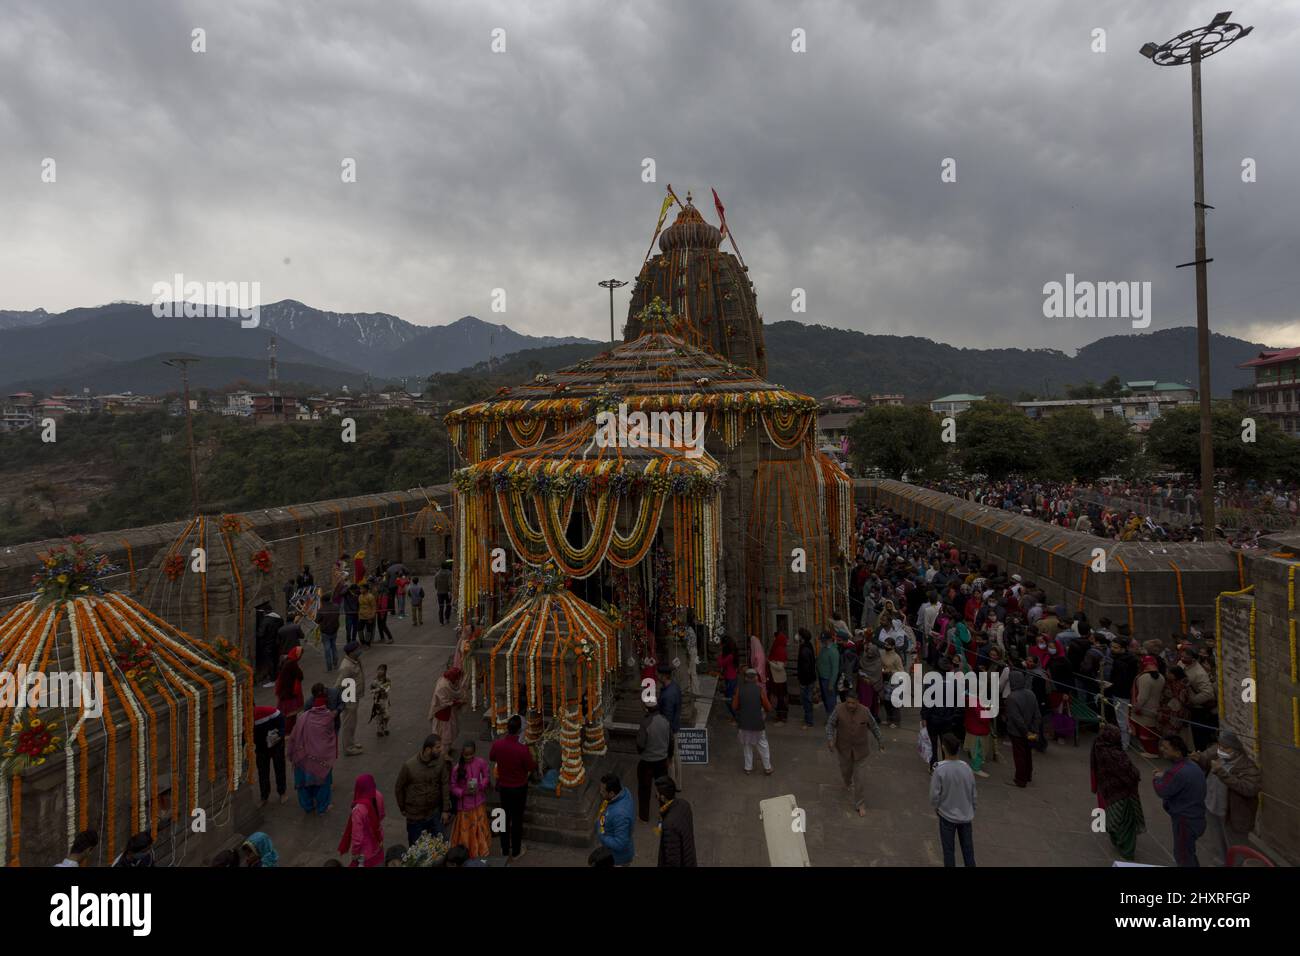 Devoti in fila al tempio di Lord Shiva, Baijnath, in occasione di Maha Shivratri Foto Stock